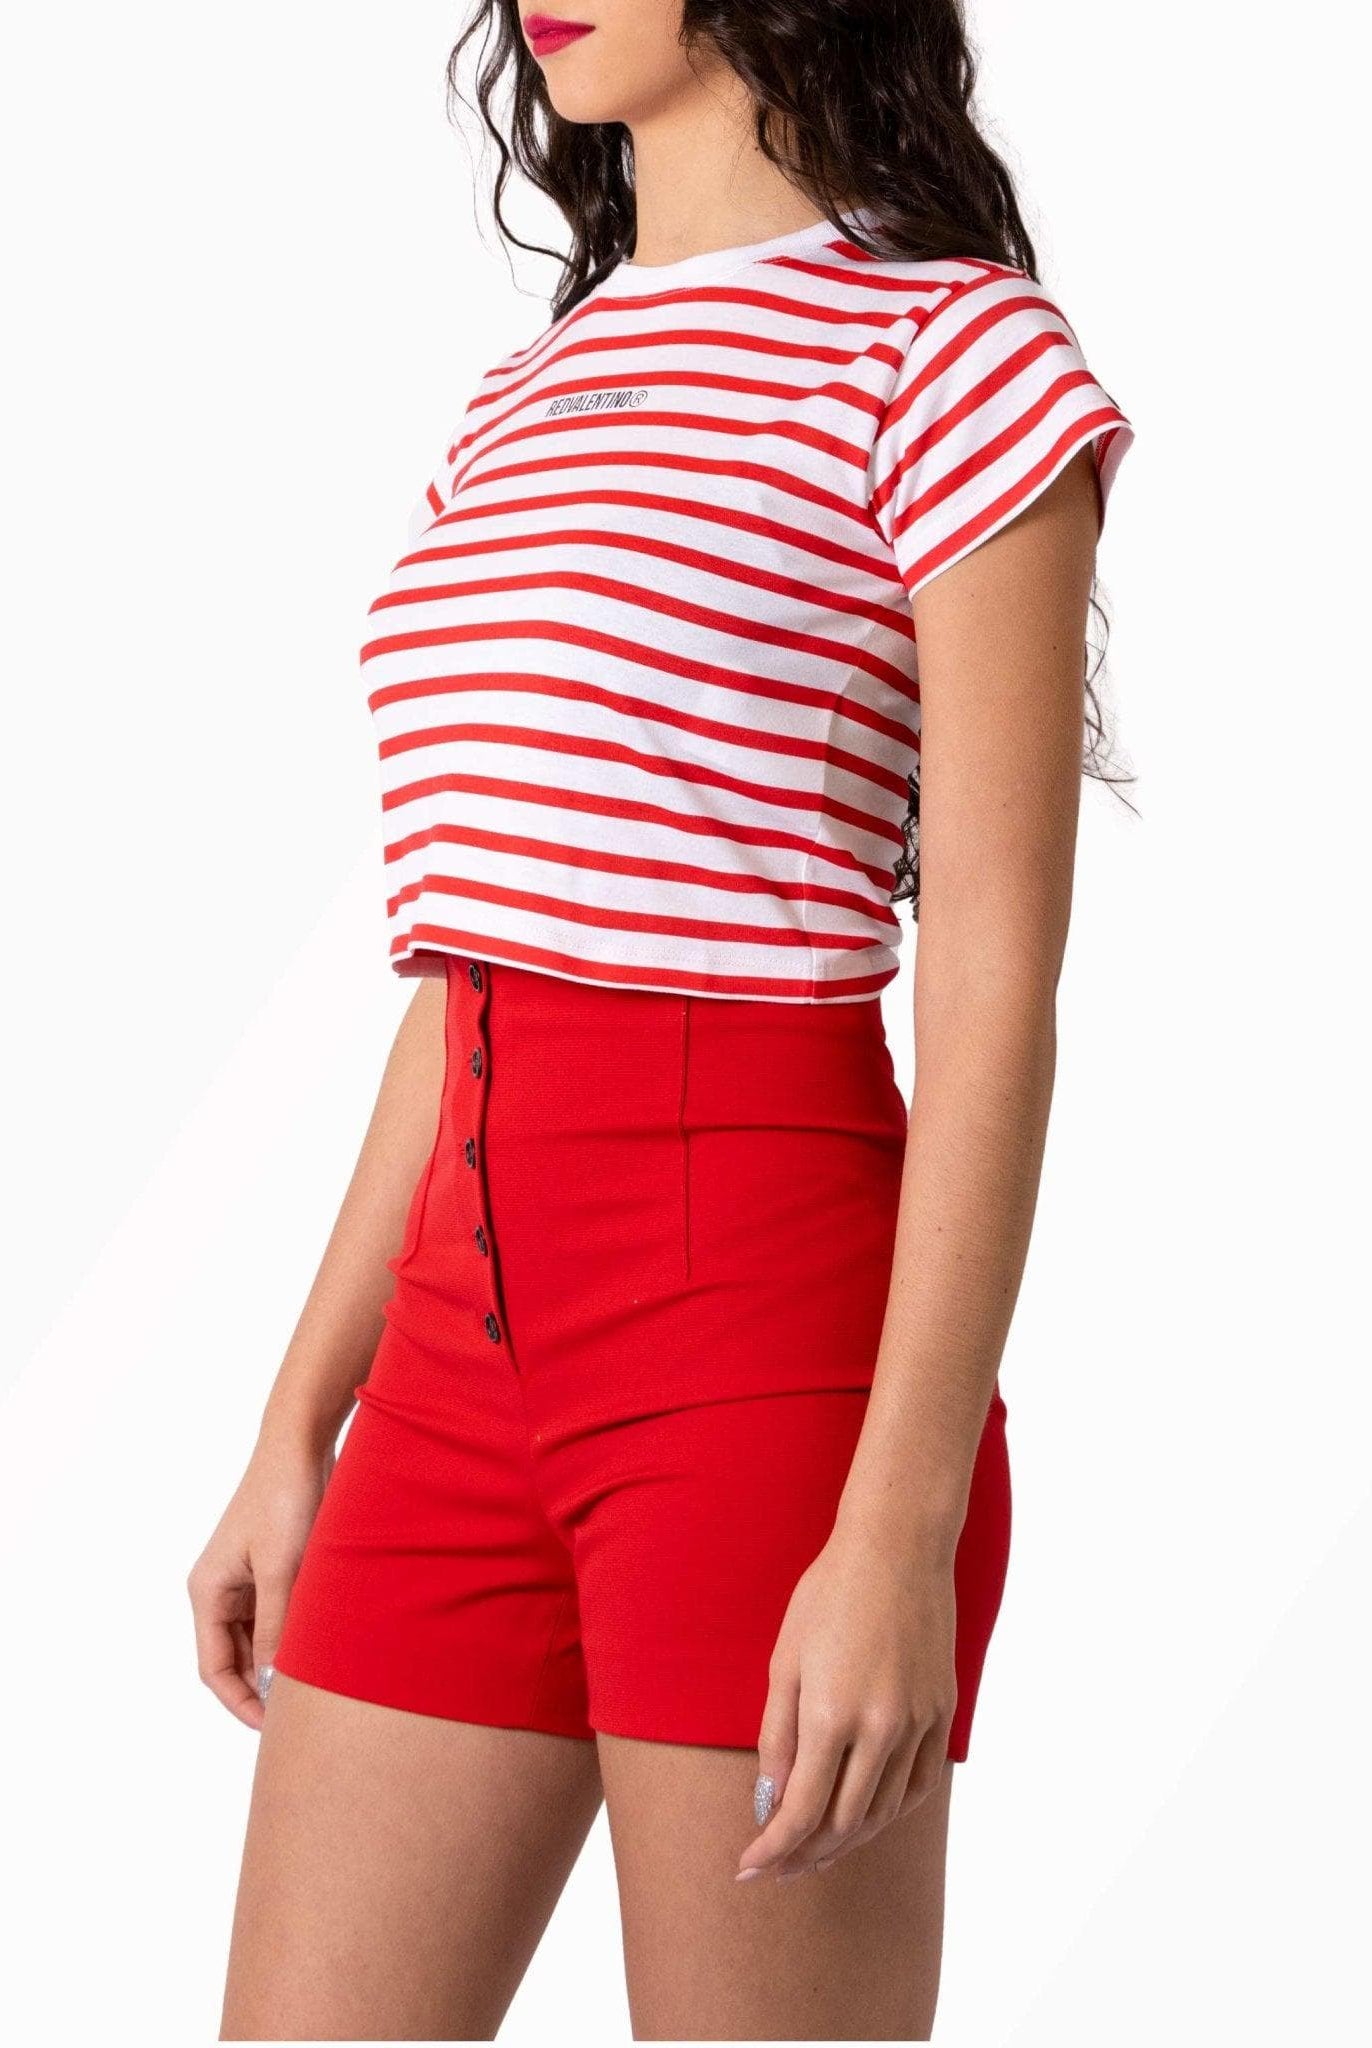 T-shirt a righe bianca e rossa- Red Valentino -Giorgioquinto